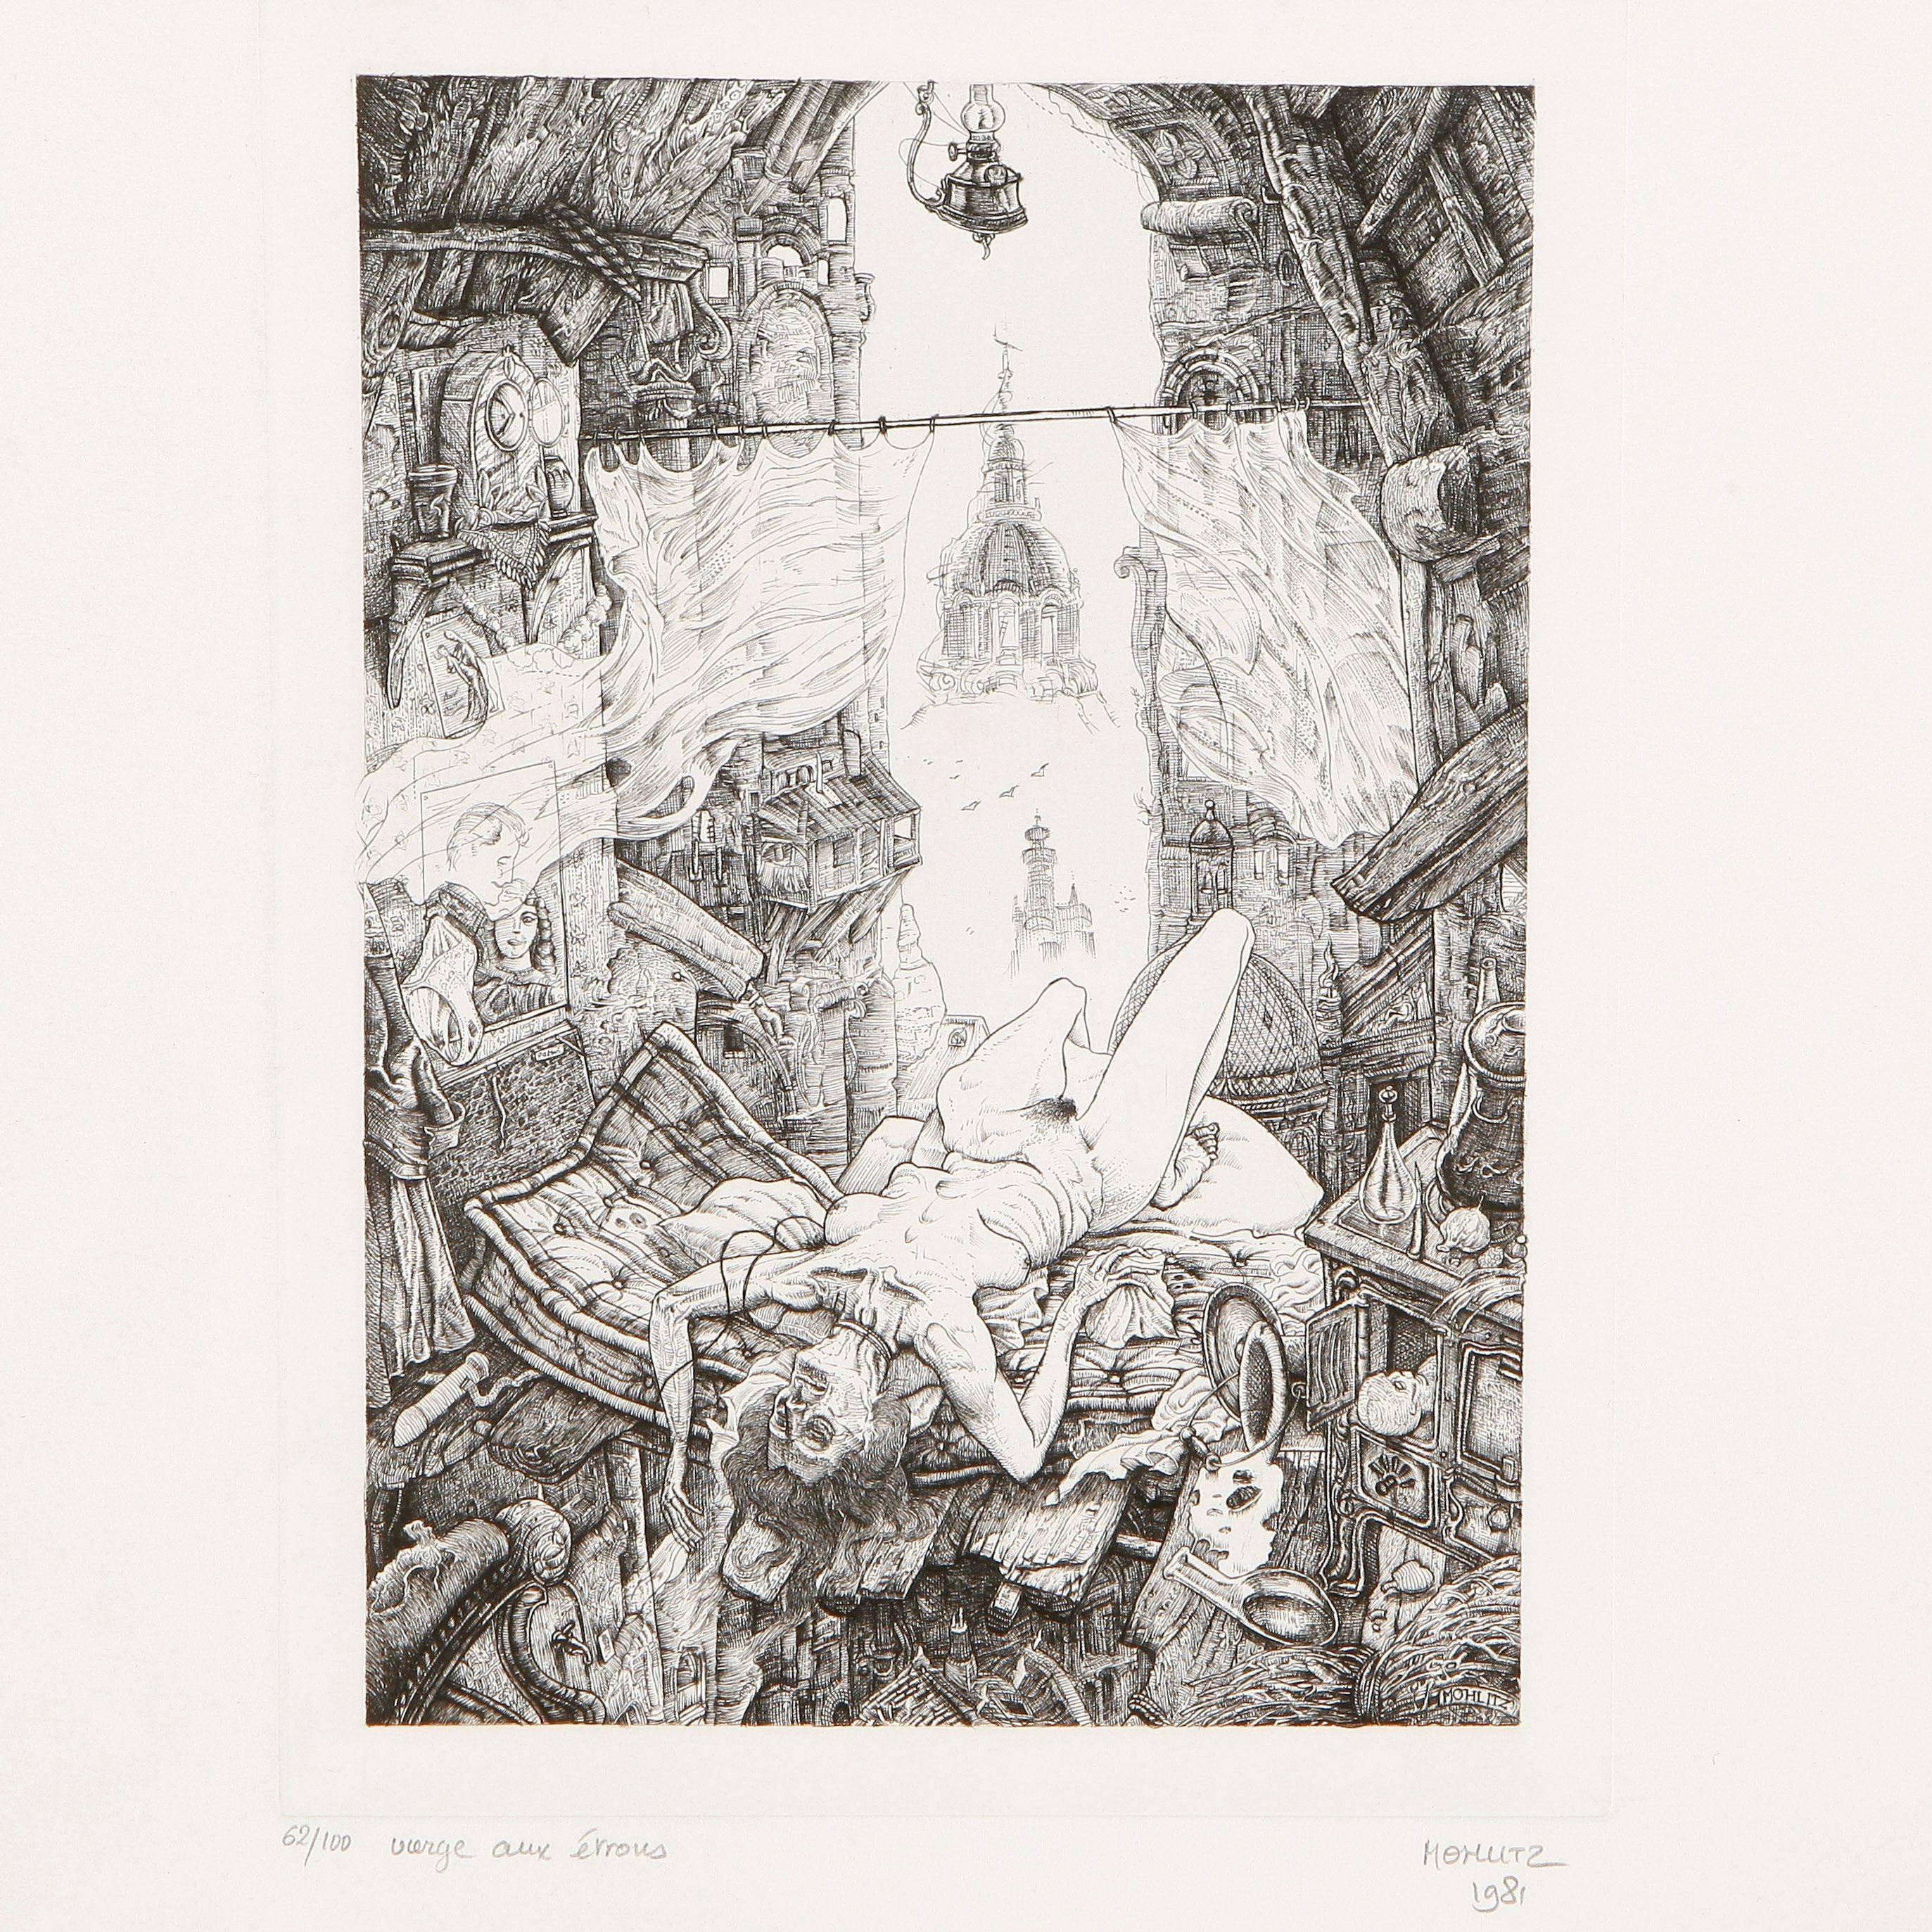 La Vierge aux étrous - Print by Philippe Mohlitz